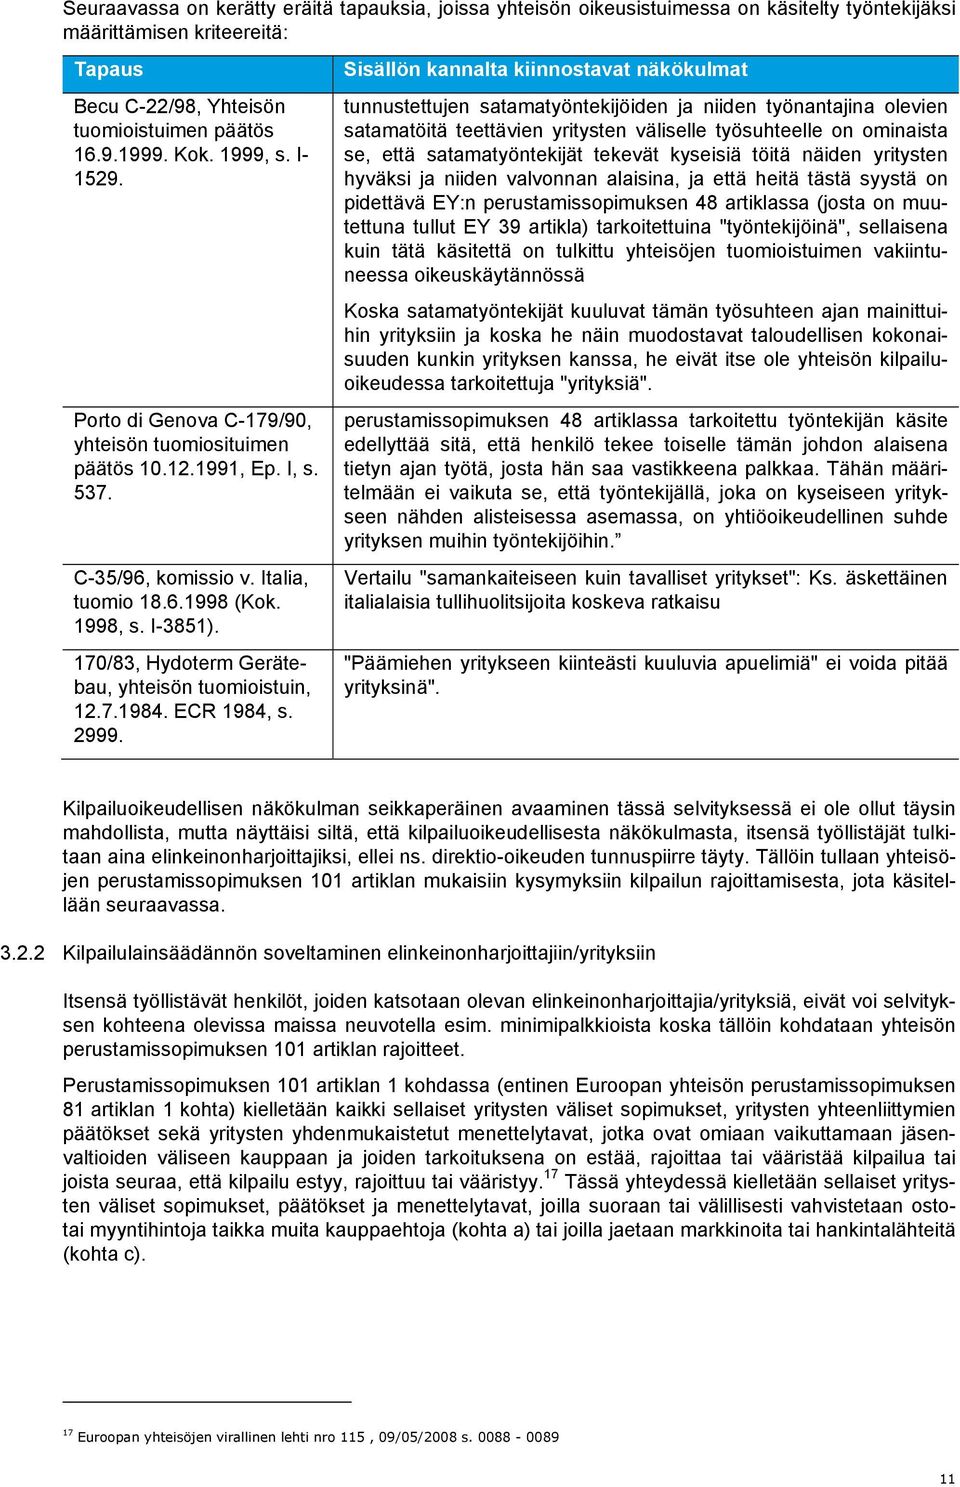 170/83, Hydoterm Gerätebau, yhteisön tuomioistuin, 12.7.1984. ECR 1984, s. 2999.